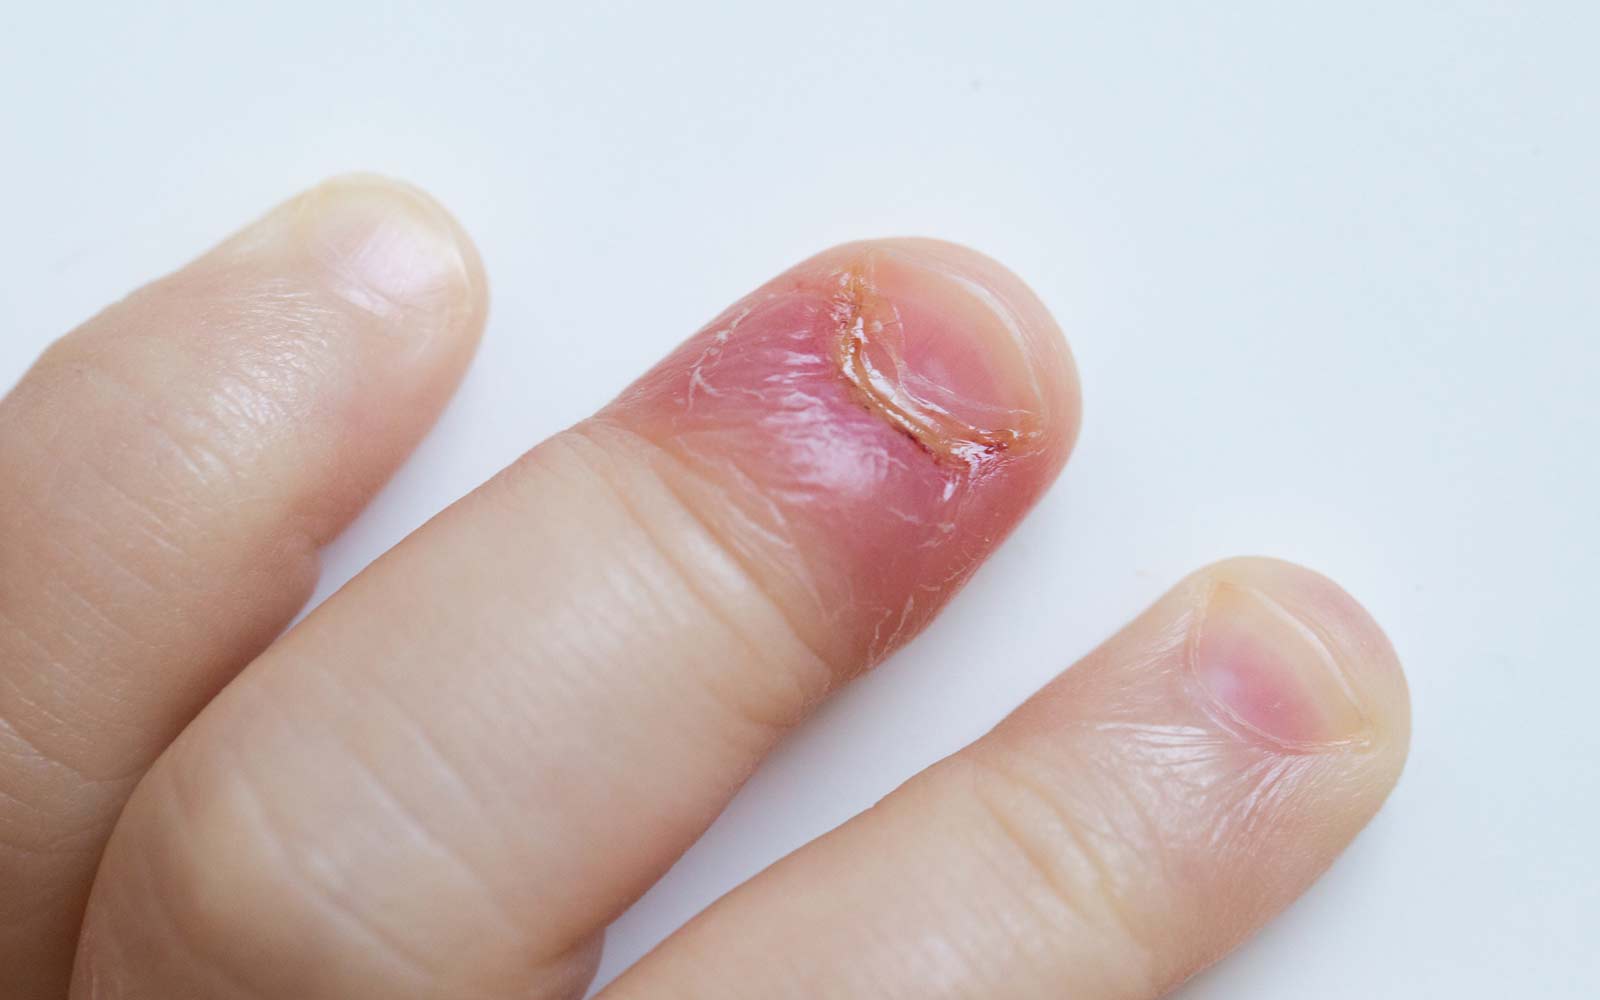 Bildet viser akutt neglerotbetennelse hos et lite barn. Fingeren er rød og betent, og det er pussdannelse i neglefolden.